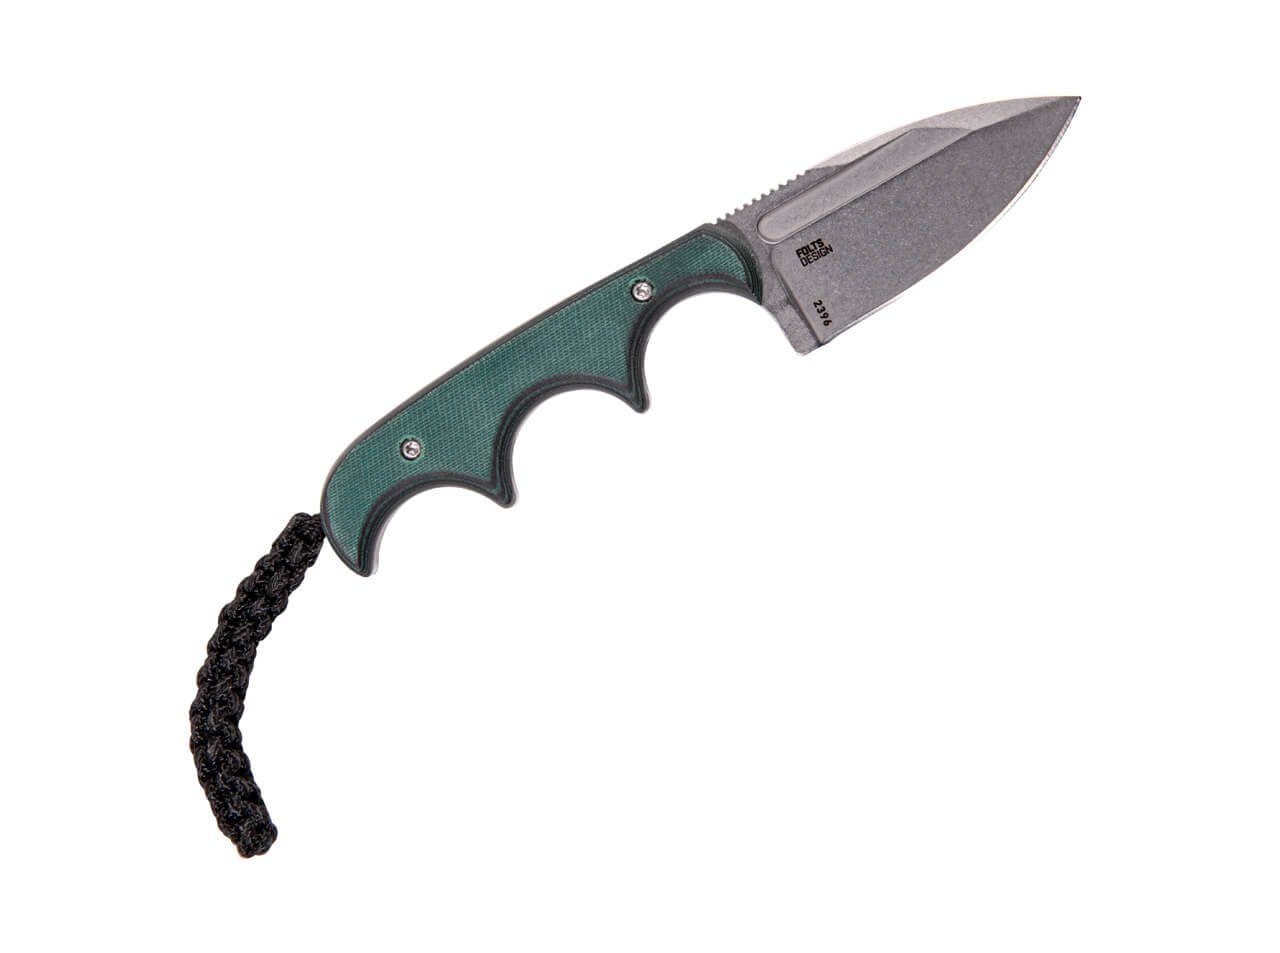 Scheide CRKT Point Spear Universalmesser Neckknife mit Minimalist CRKT